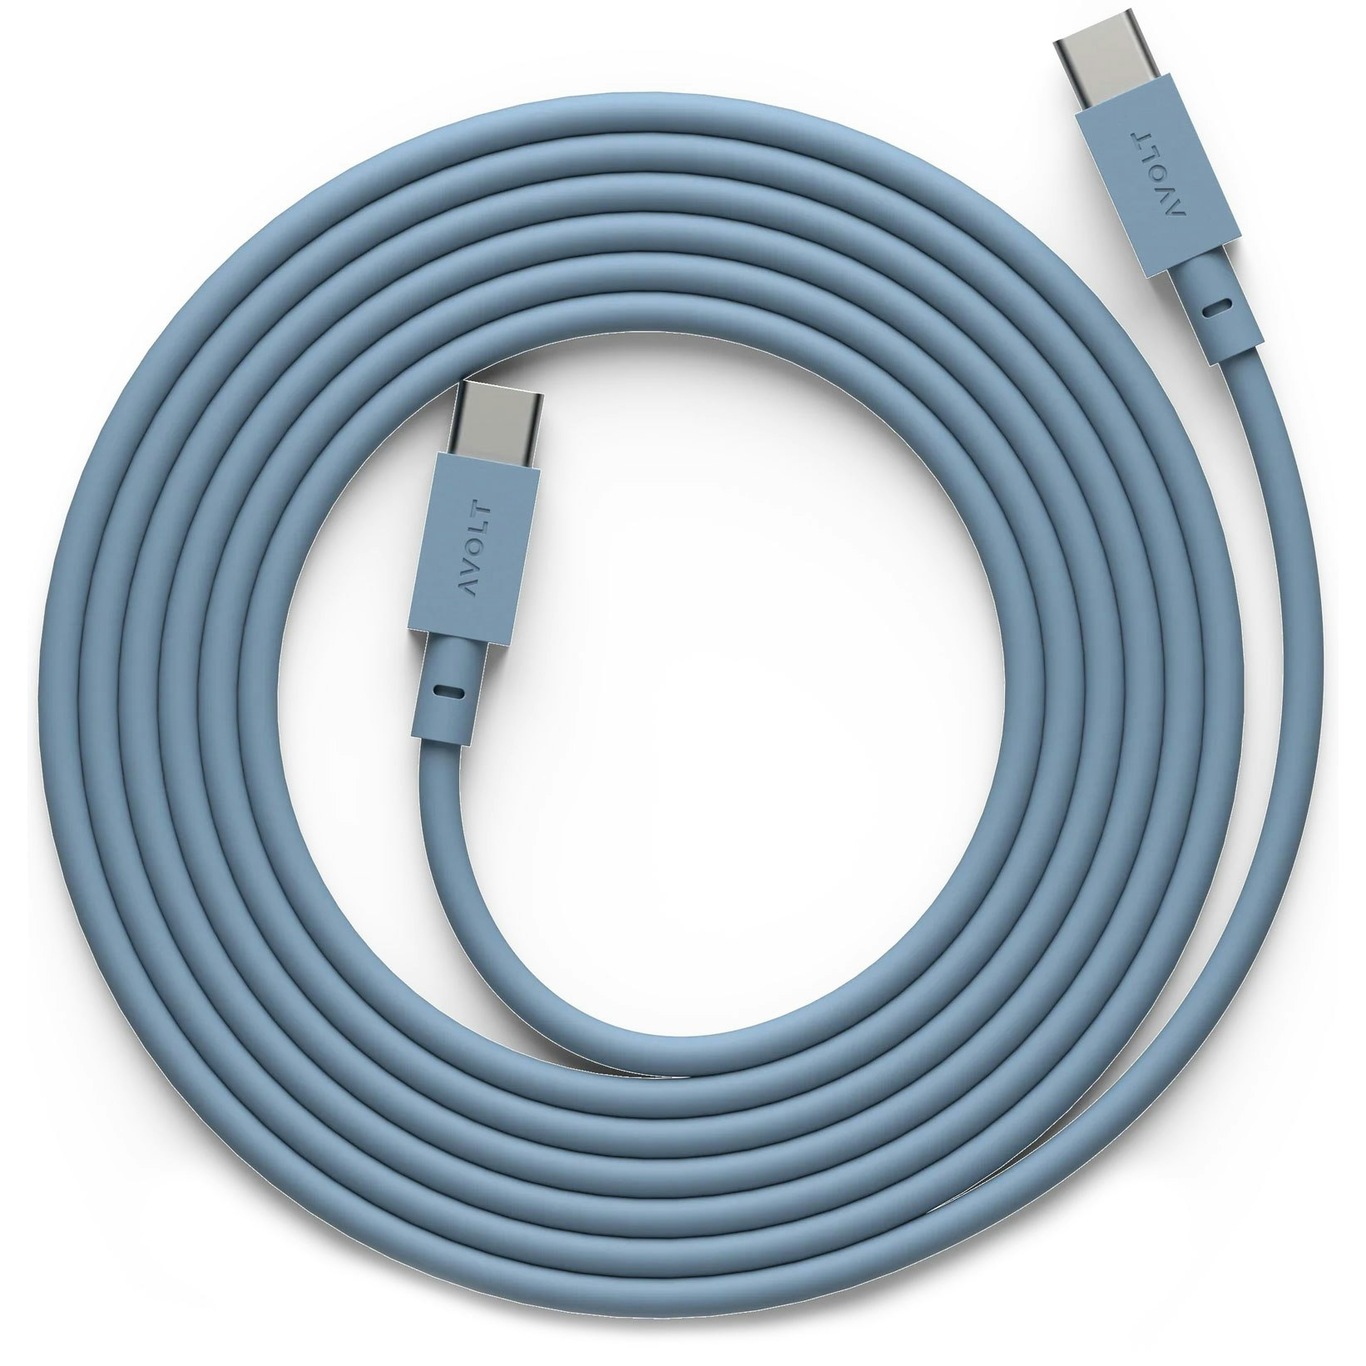 Cable 1 Oplaadkabel USB-C / USB-C 2 m, Haaienblauw